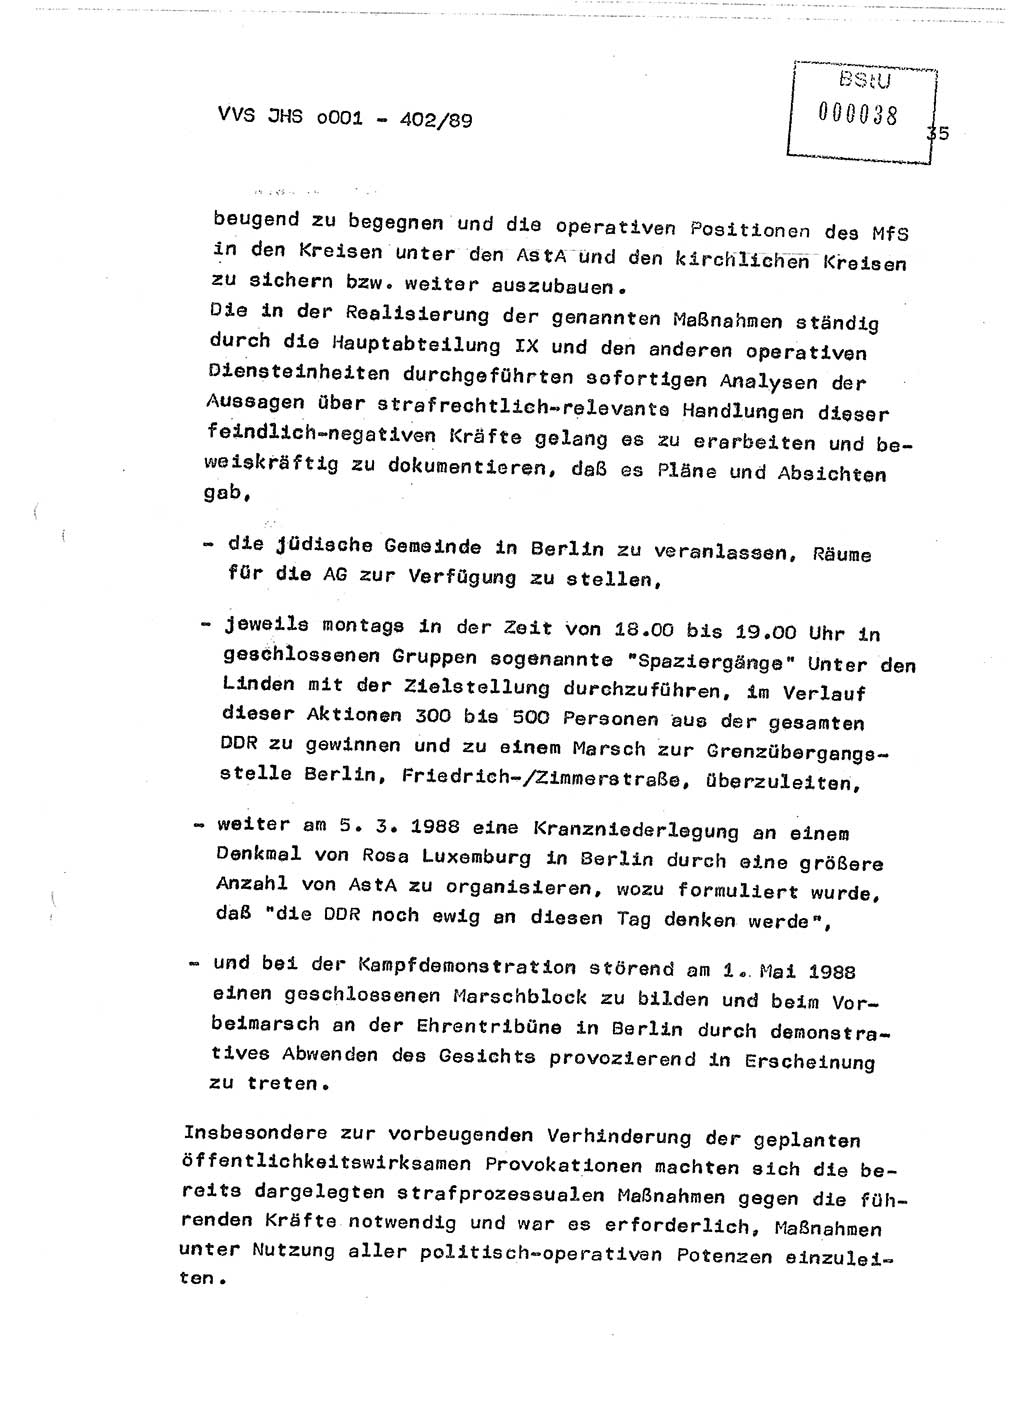 Diplomarbeit Major Günter Müller (HA Ⅸ/9), Ministerium für Staatssicherheit (MfS) [Deutsche Demokratische Republik (DDR)], Juristische Hochschule (JHS), Vertrauliche Verschlußsache (VVS) o001-402/89, Potsdam 1989, Seite 35 (Dipl.-Arb. MfS DDR JHS VVS o001-402/89 1989, S. 35)